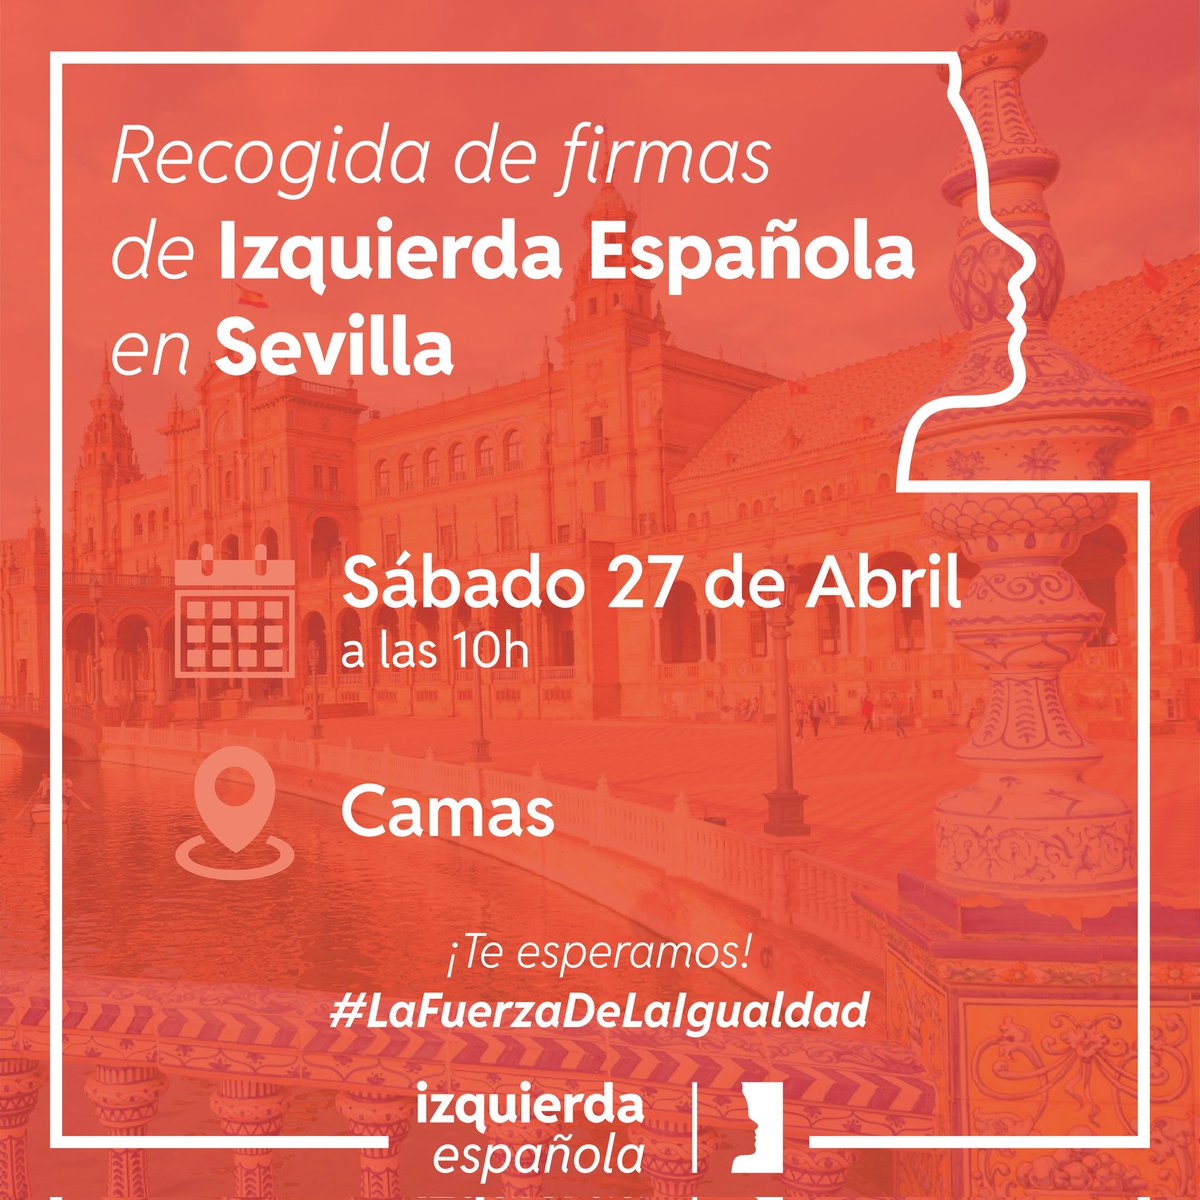 Mañana recogida de firmas en Gijón y en Sevilla 🙌🏻

#LaFuerzaDeLaIgualdad